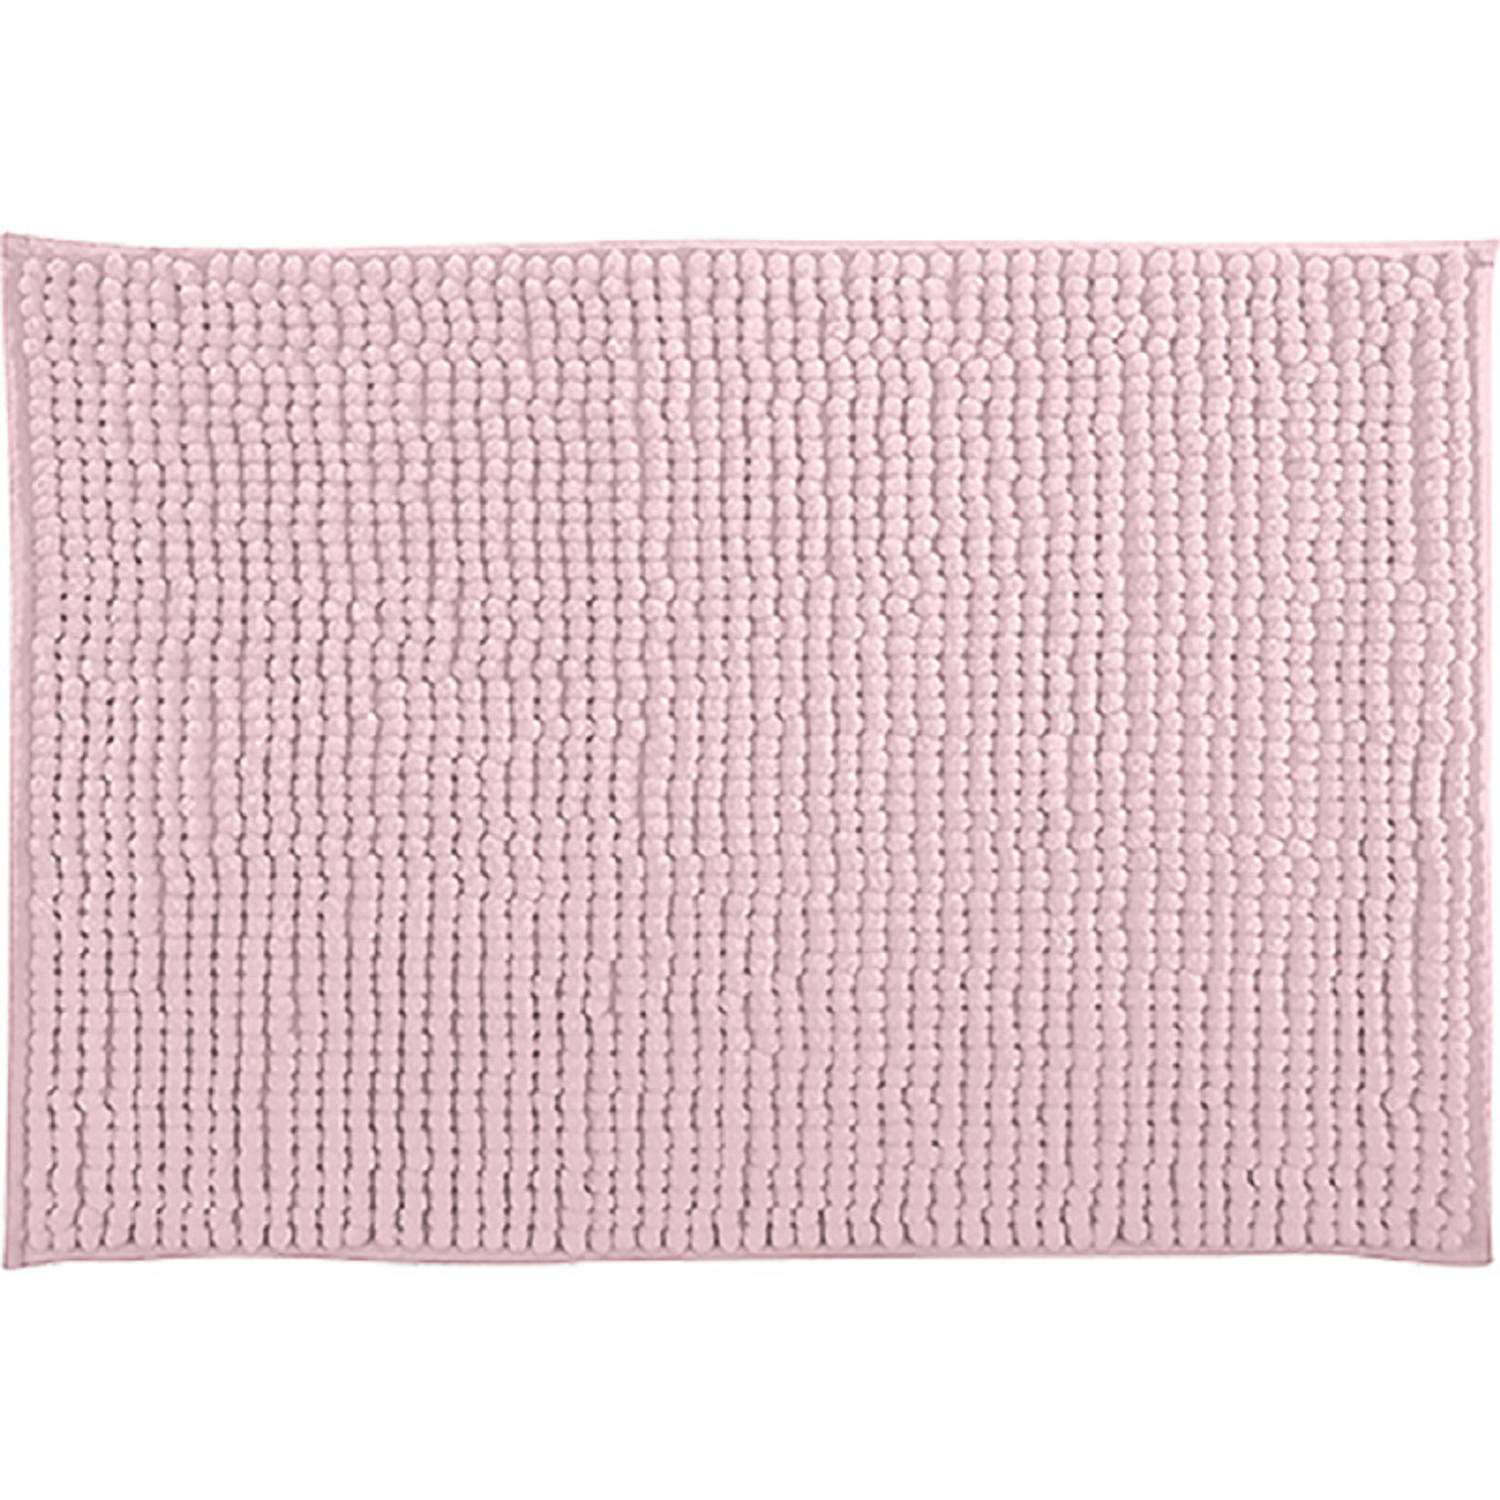 MSV Badkamerkleed/badmat tapijtje voor op de vloer - lichtroze - 50 x 80 cm - Microvezel - anti slip